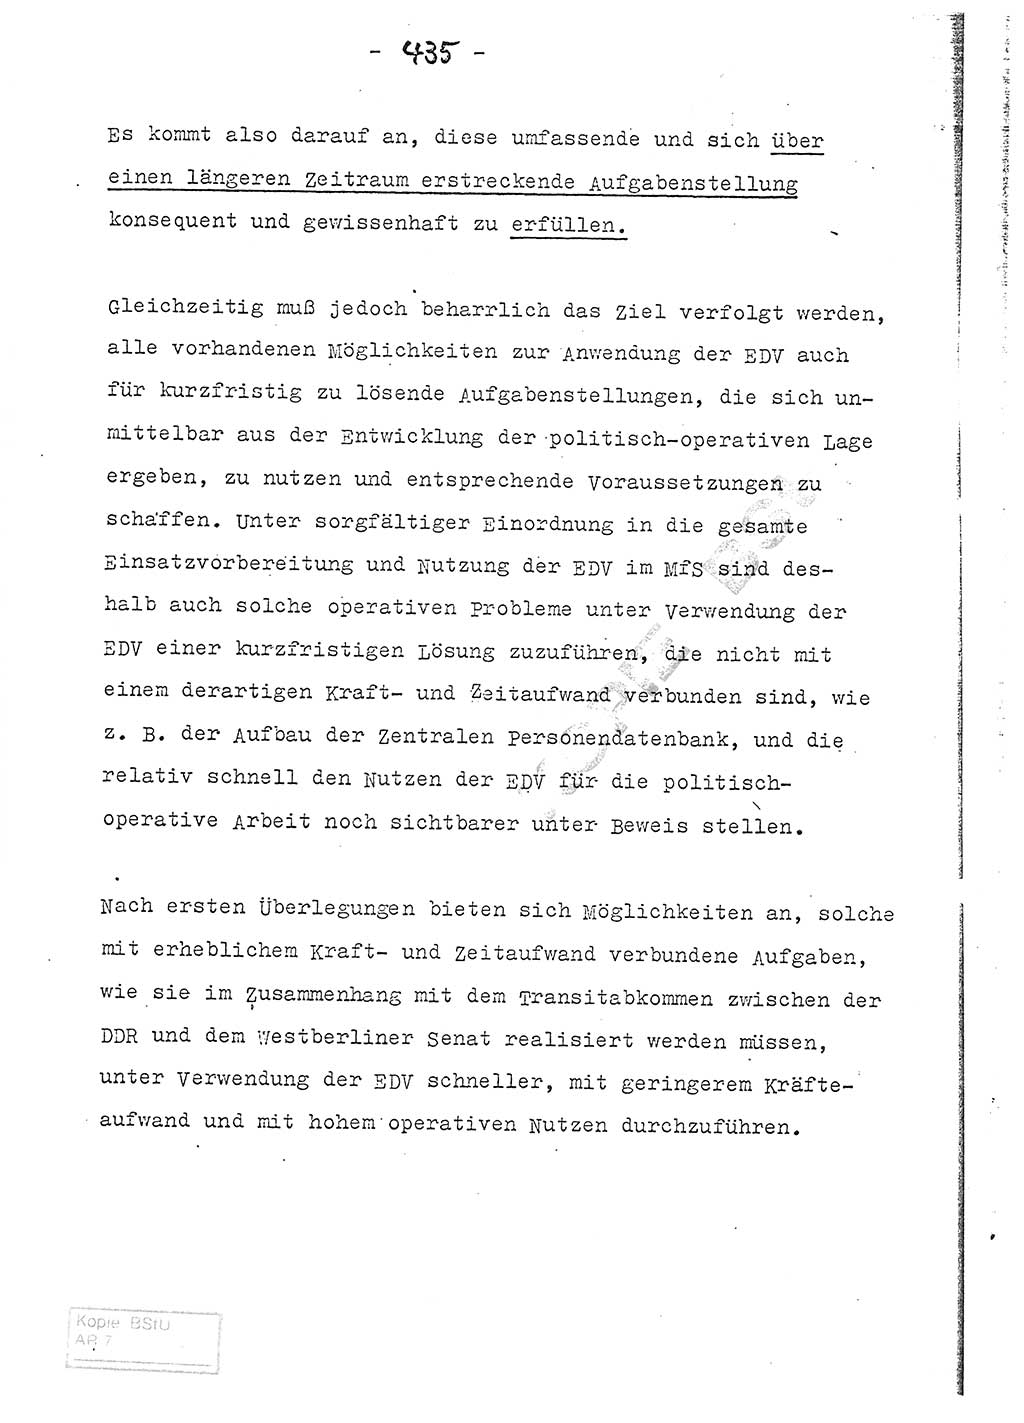 Referat (Entwurf) des Genossen Minister (Generaloberst Erich Mielke) auf der Dienstkonferenz 1972, Ministerium für Staatssicherheit (MfS) [Deutsche Demokratische Republik (DDR)], Der Minister, Geheime Verschlußsache (GVS) 008-150/72, Berlin 25.2.1972, Seite 435 (Ref. Entw. DK MfS DDR Min. GVS 008-150/72 1972, S. 435)